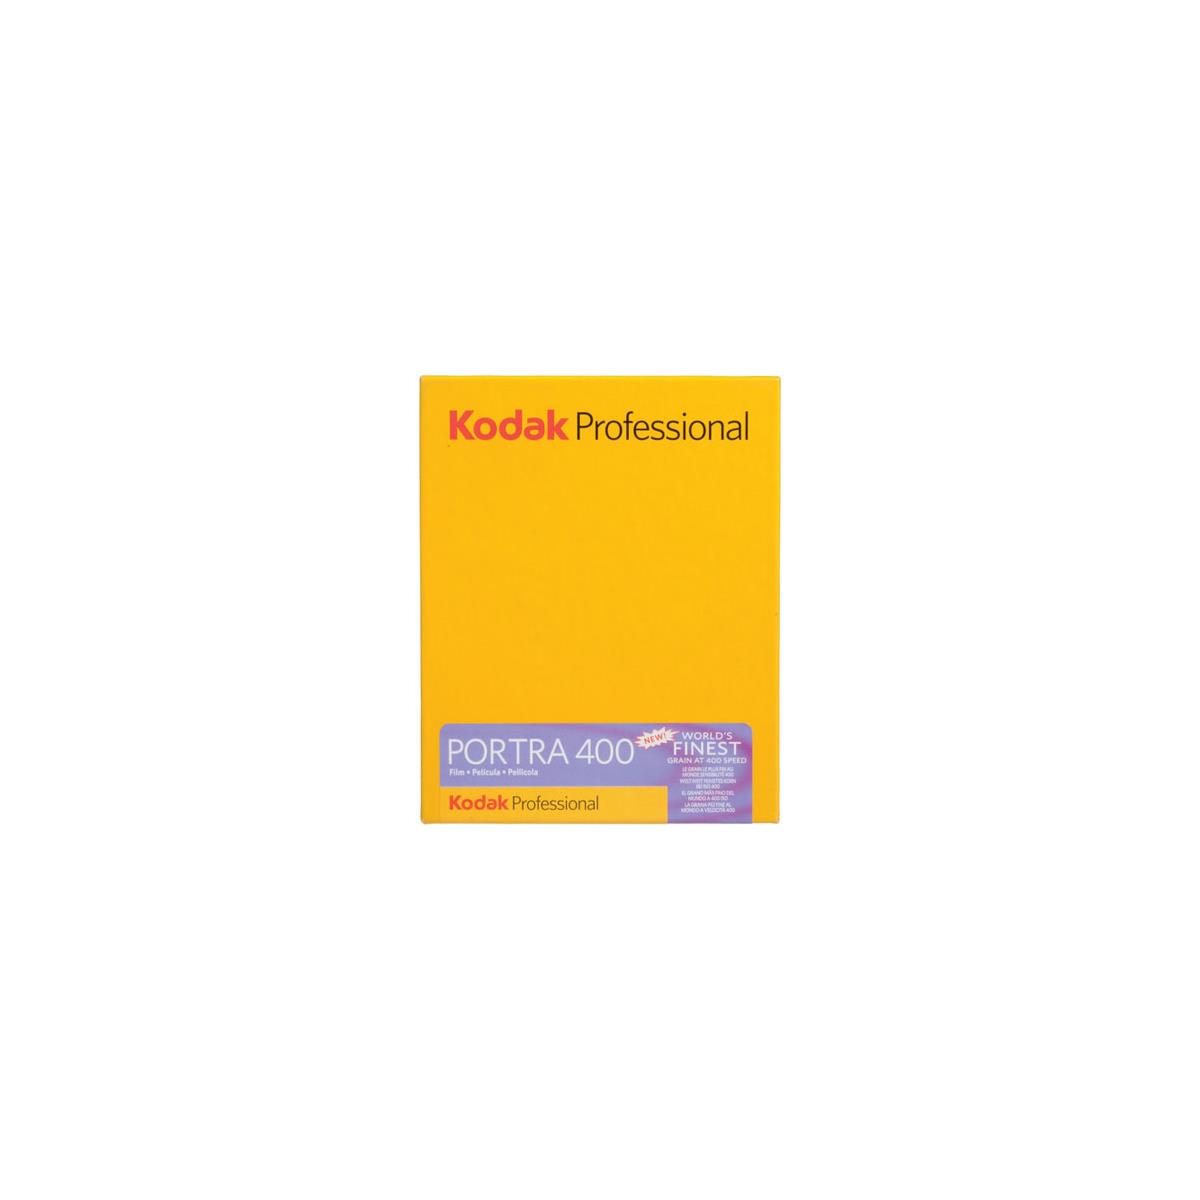 Цветная негативная пленка KODAK Portra 400, 4x5 дюймов, 10 листов, США, № 8806465